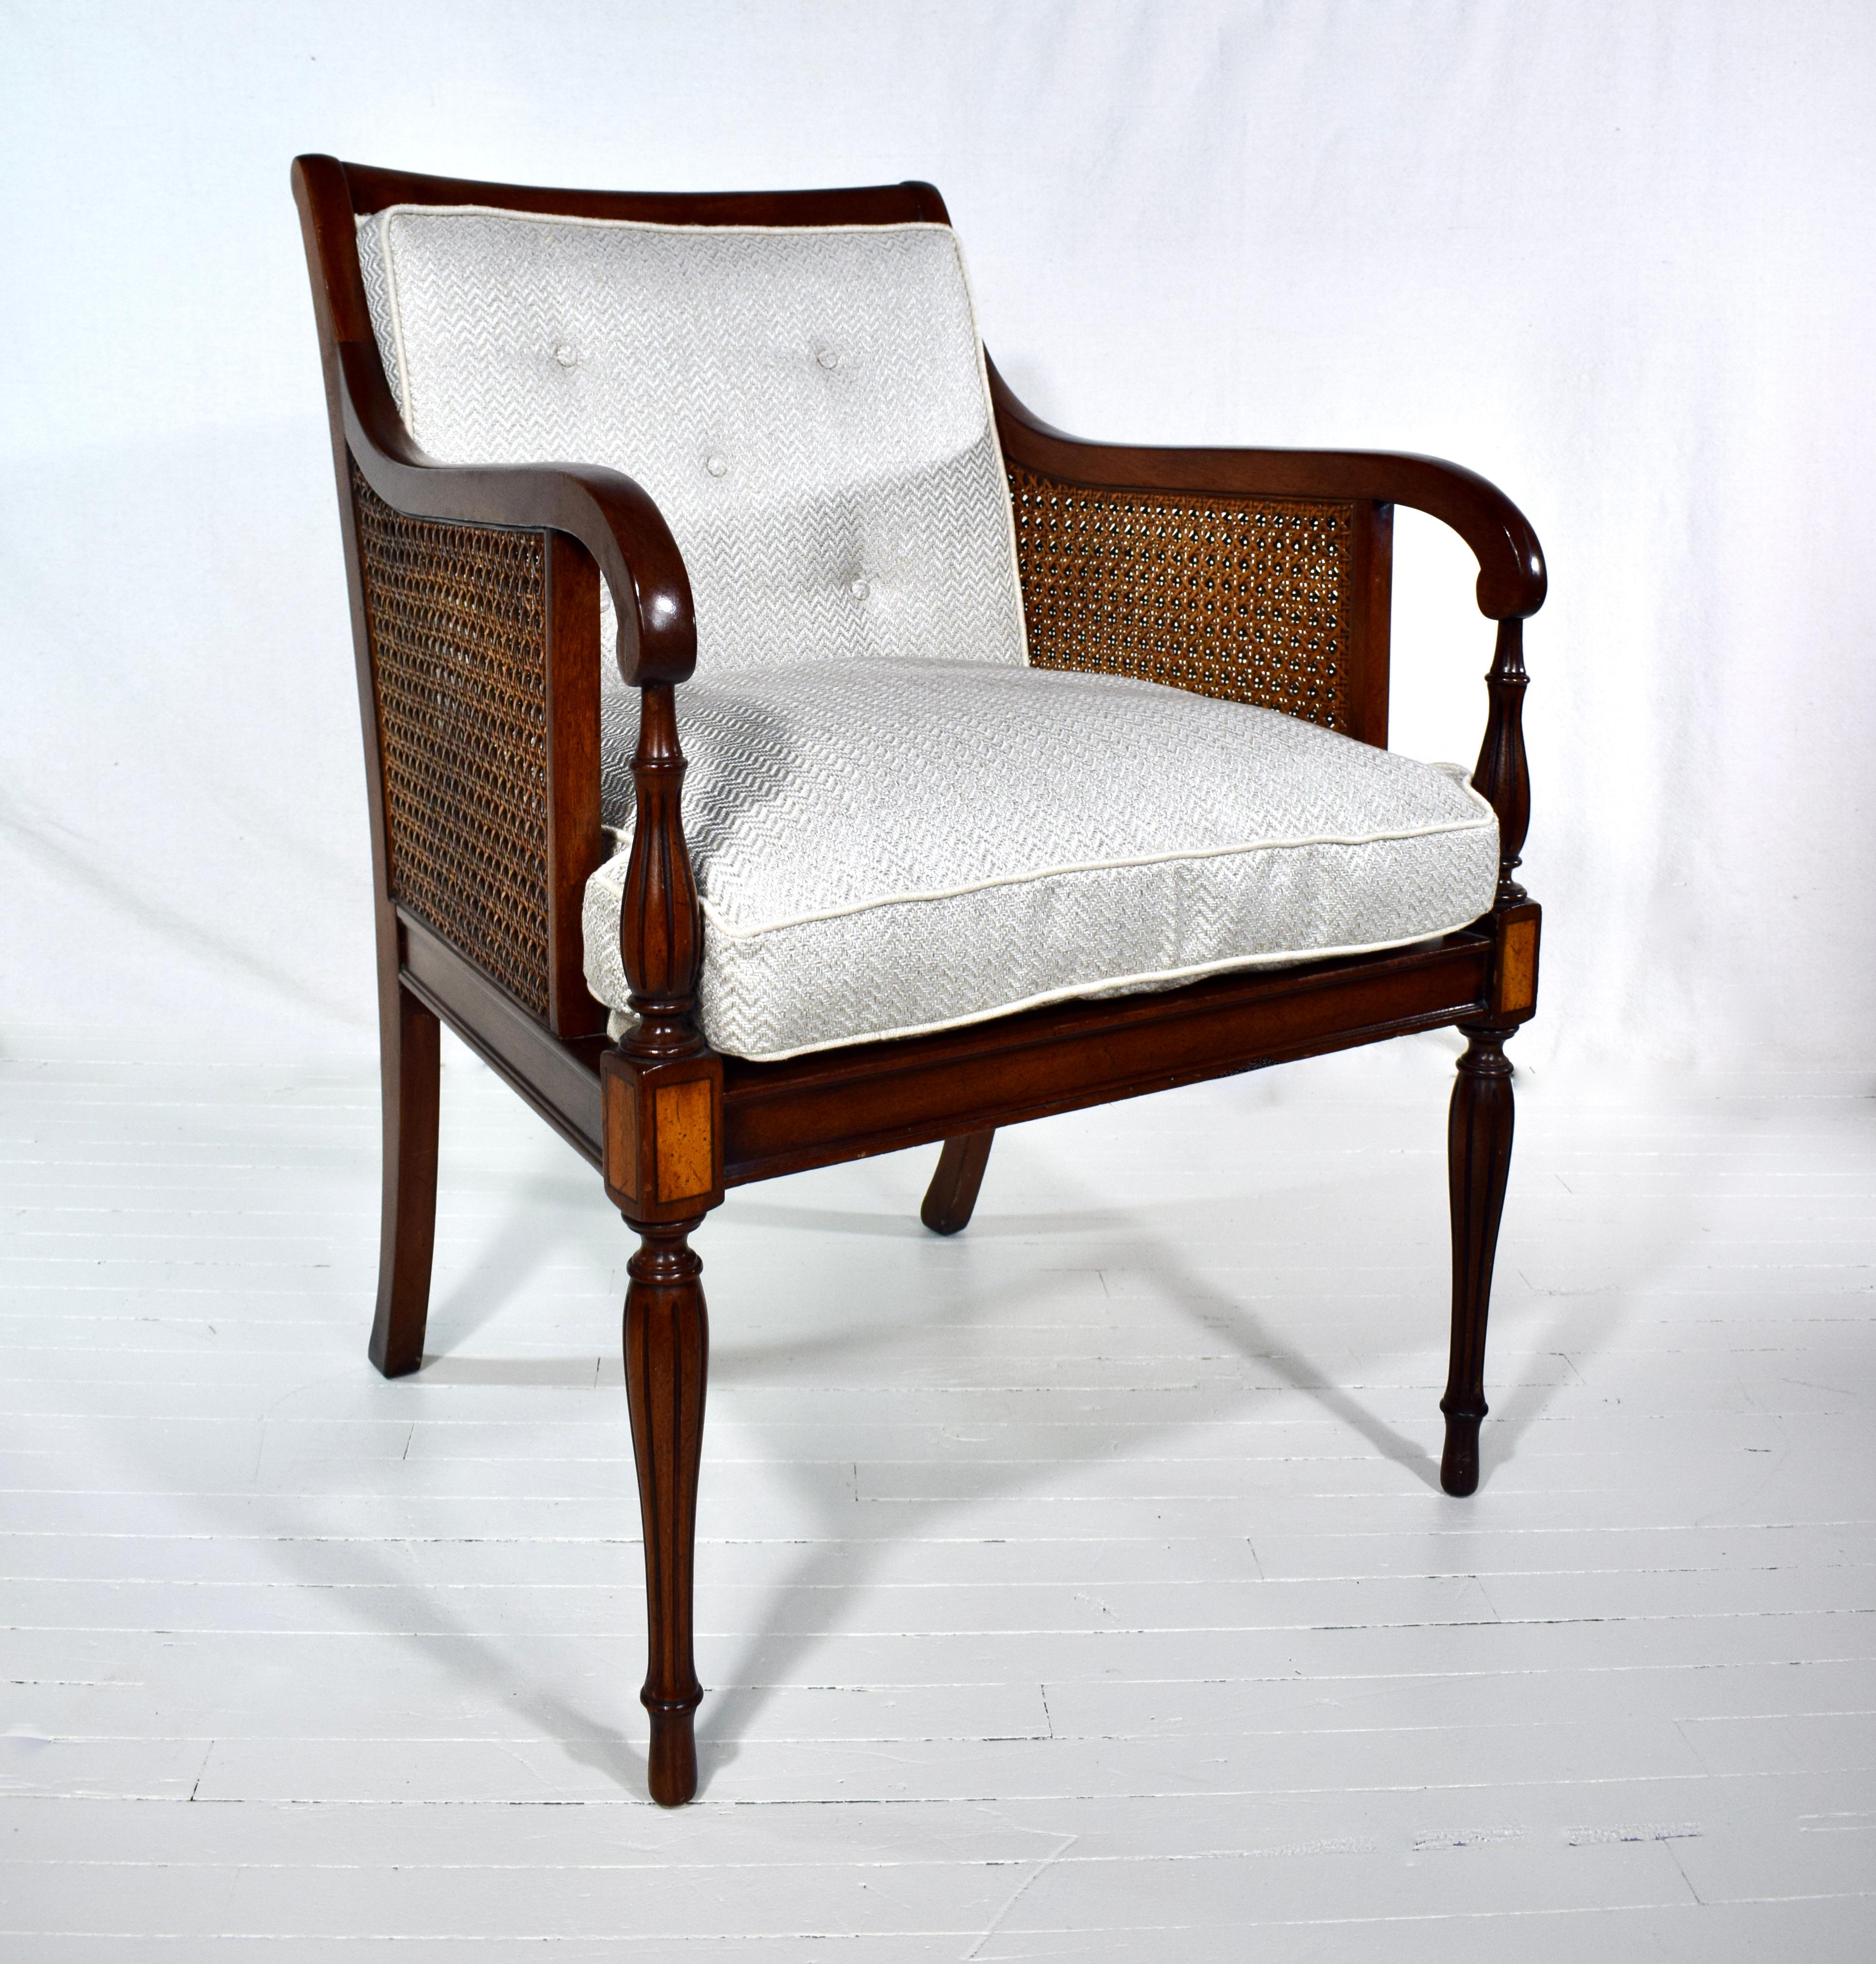 Fauteuil de style Regency de George III en acajou et en bois de satin, à double canne, avec des pieds fuselés en roseau et tournés. La chaise est entièrement détaillée à la main et le double cannage, magnifiquement entretenu, est intact. Le nouveau